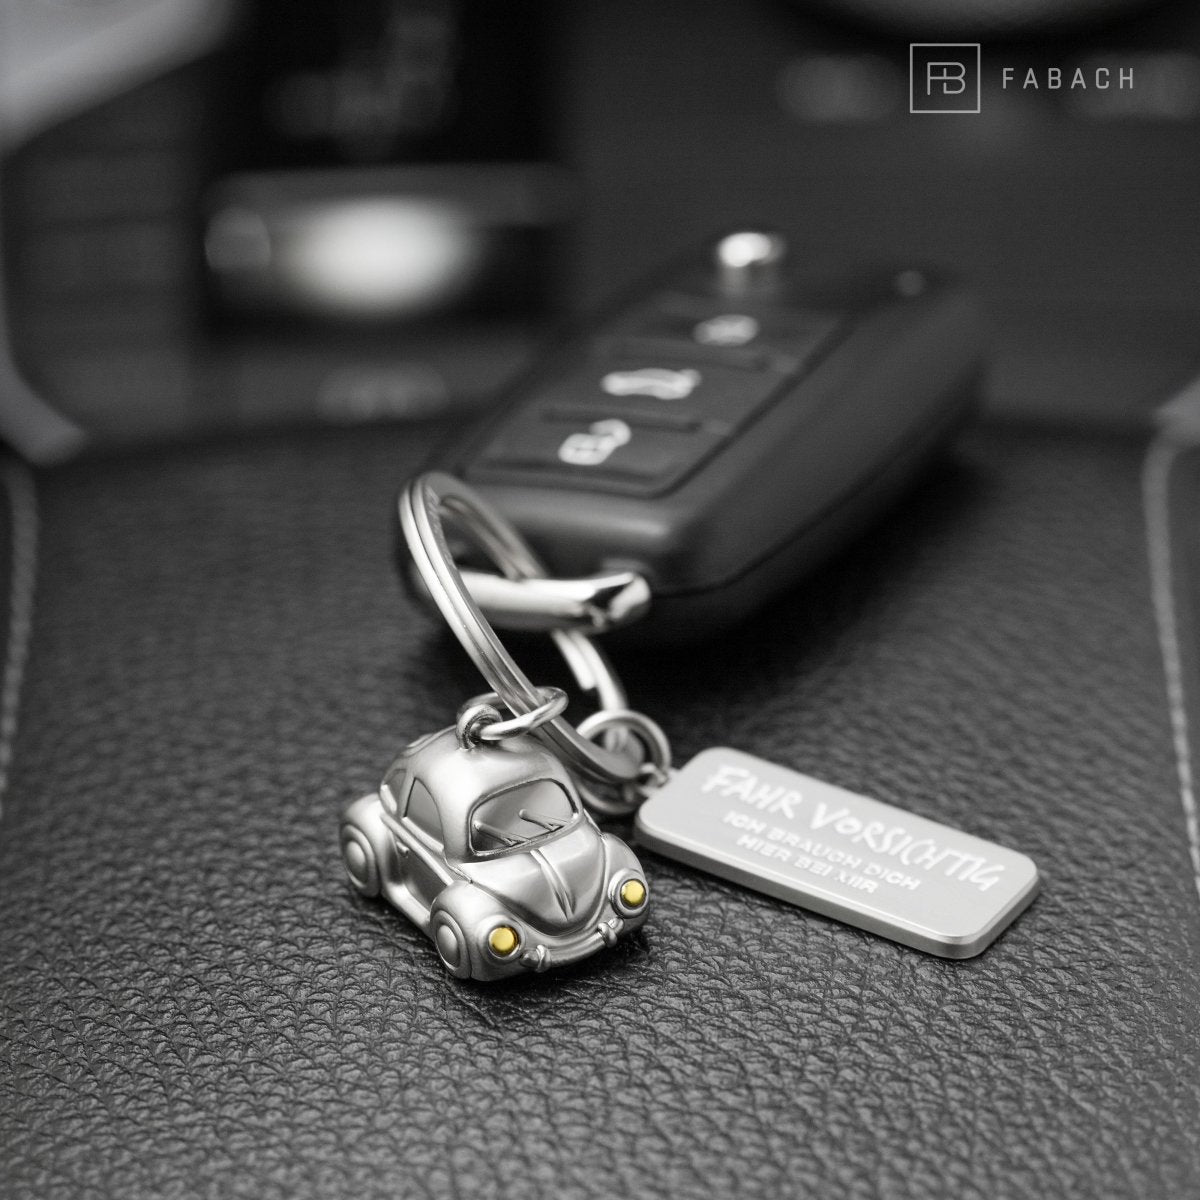 "Car" Miniatur Auto Schlüsselanhänger - Süßer Glücksbringer für Autofahrer - mit Gravur "Fahr vorsichtig" - FABACH